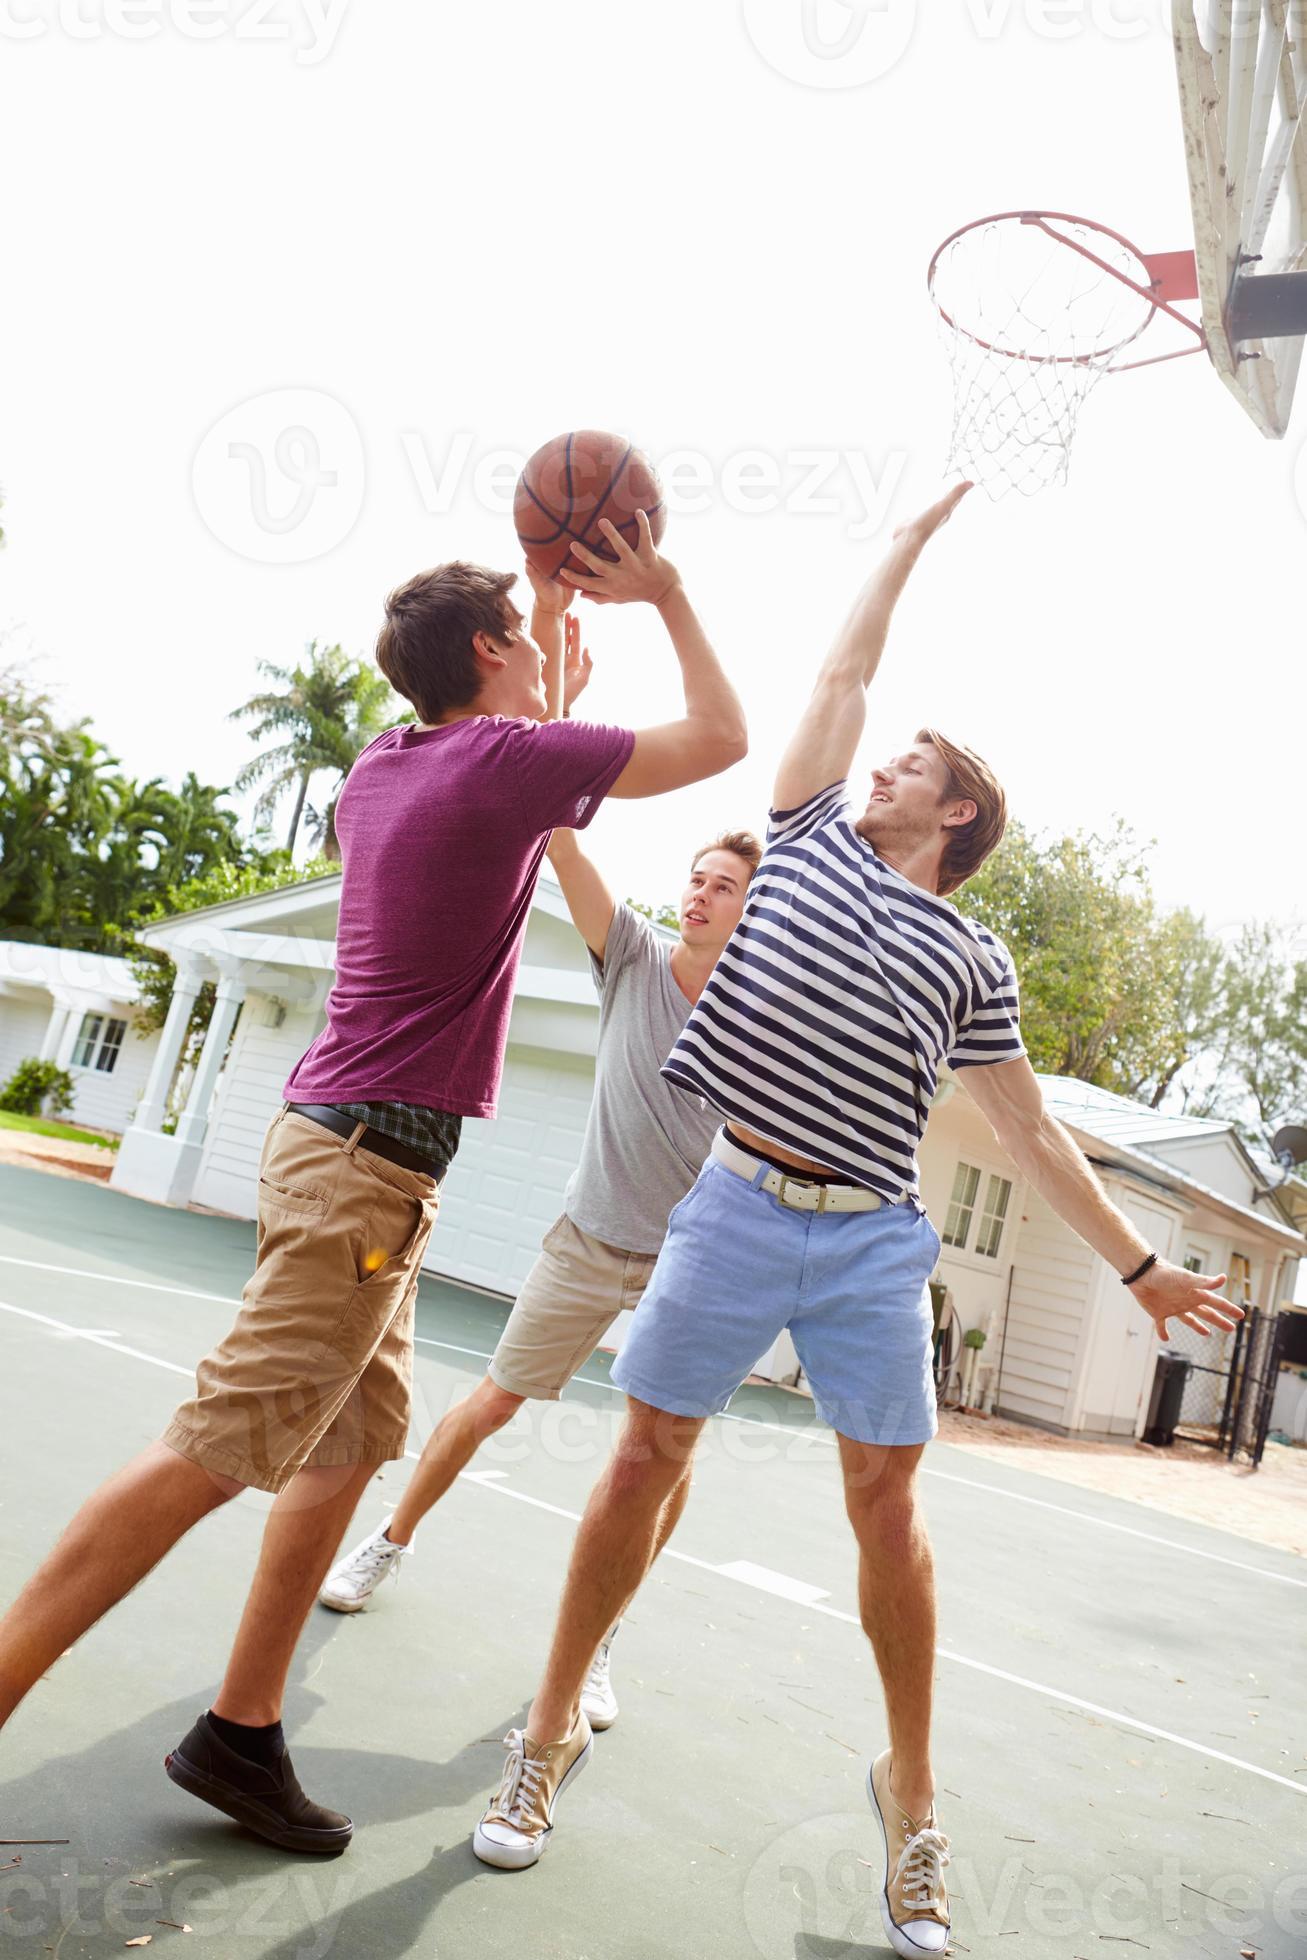 Foto Um grupo de pessoas jogando basquete – Imagem de Basquete